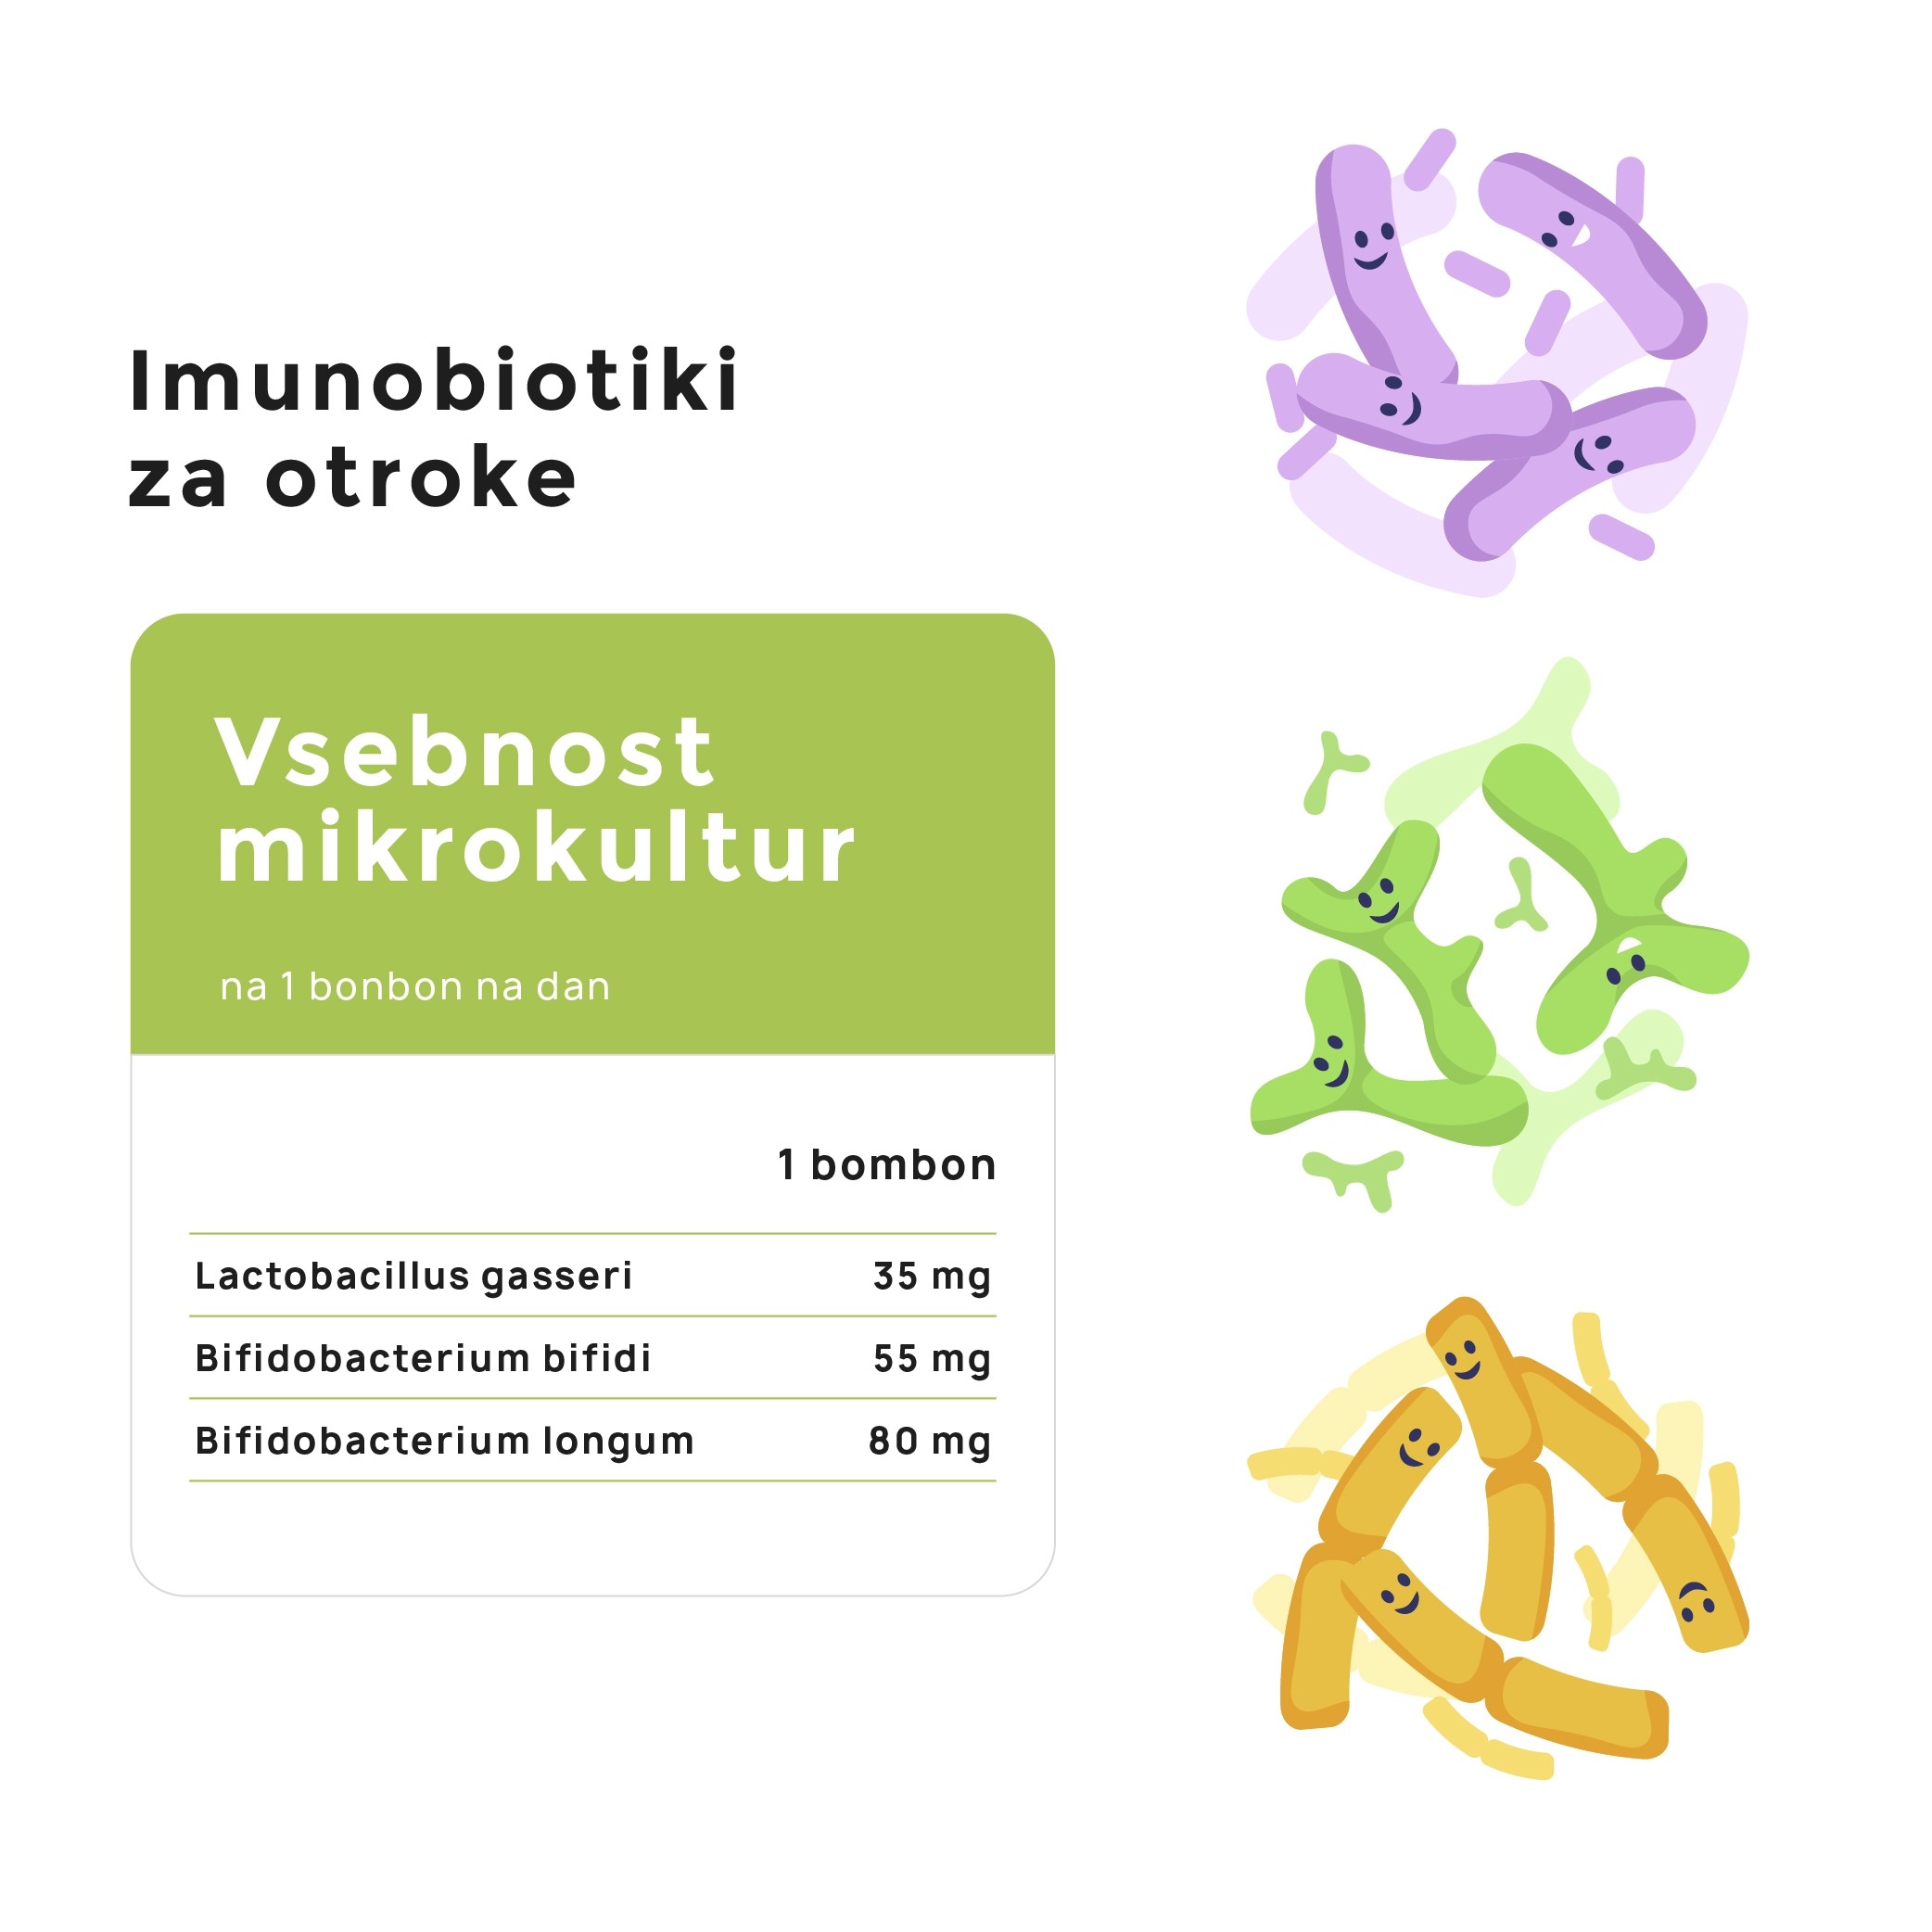 Imunobiotiki za otroke - mikrokulture